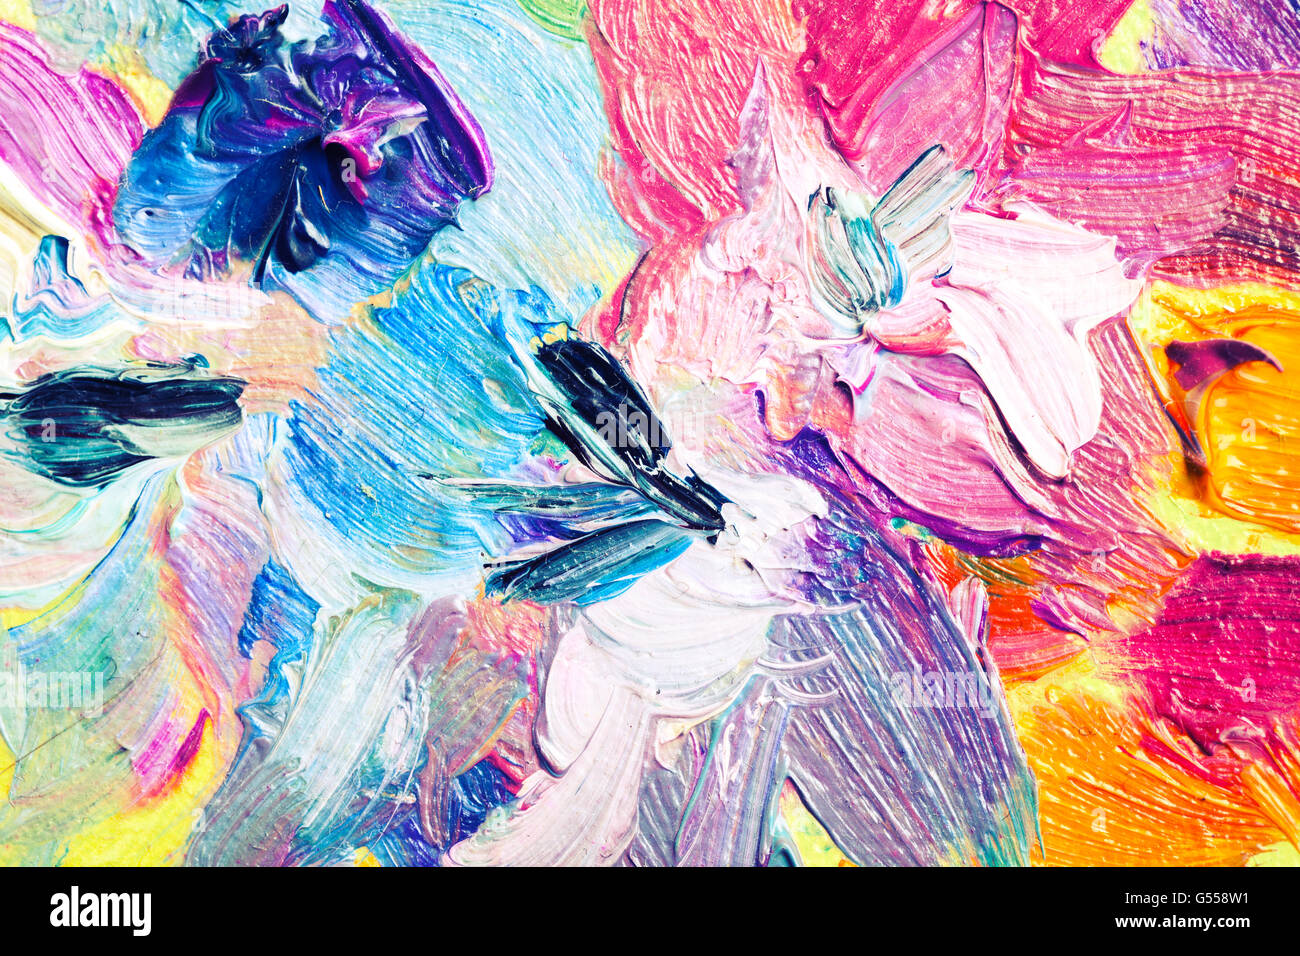 Peinture à l'huile, close-up fragment, résumé des fleurs colorées Banque D'Images